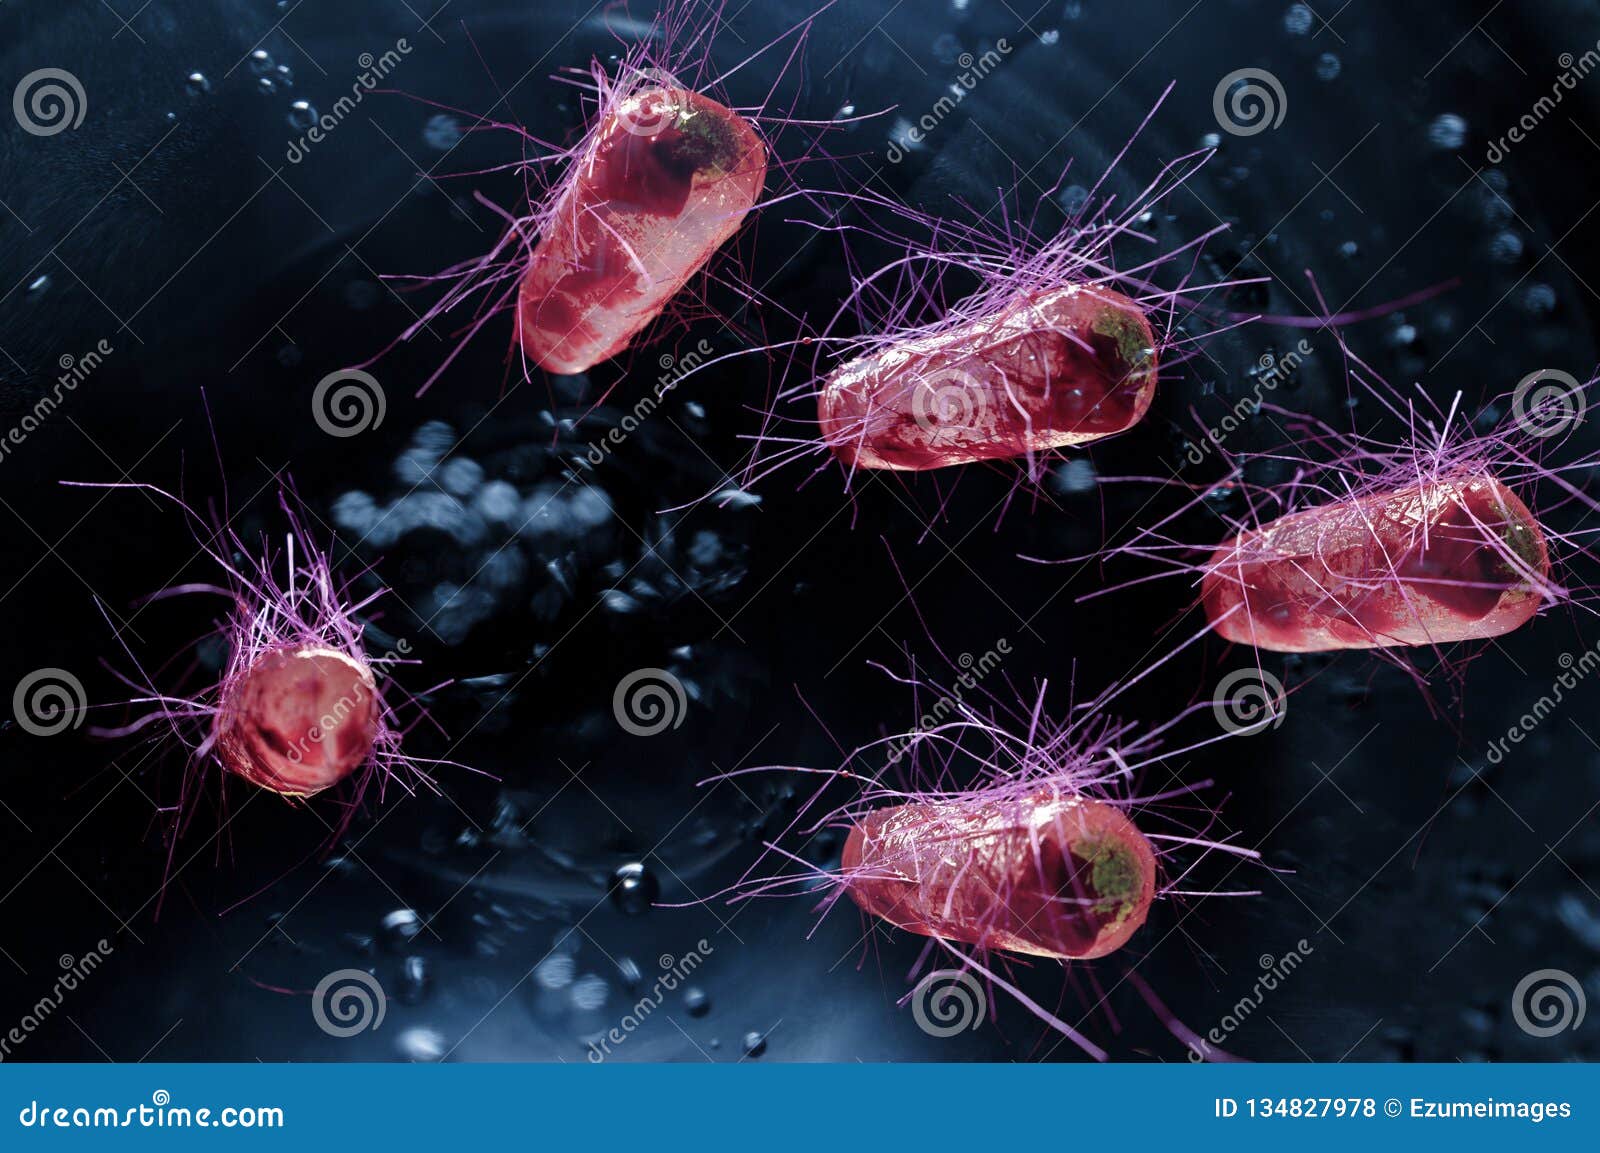 e.coli bacteria cells